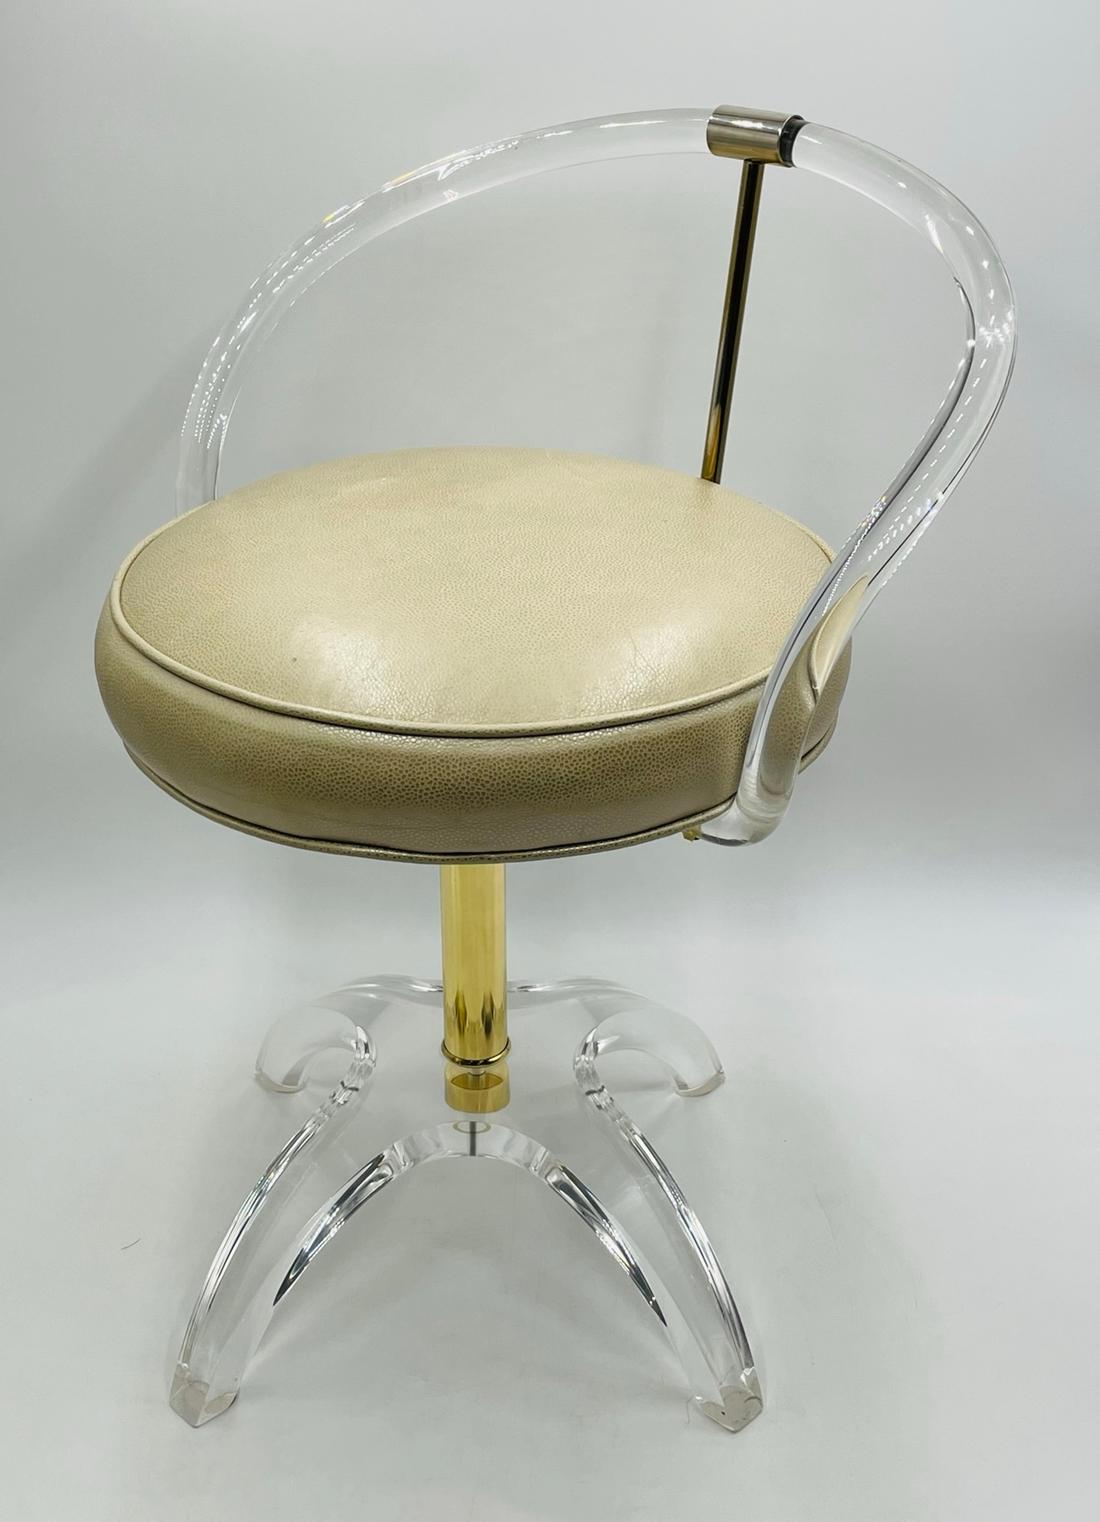 Atemberaubende Lucite und Messing Eitelkeit Stuhl von Charles Hollis Jones, das Original und erste Design war in Messing und im Auftrag von Lucille Ball. Der Stuhl ist in gutem Vintage-Zustand.

Maßnahmen:
25,50 Zoll hoch x 19,50 Zoll breit x 18